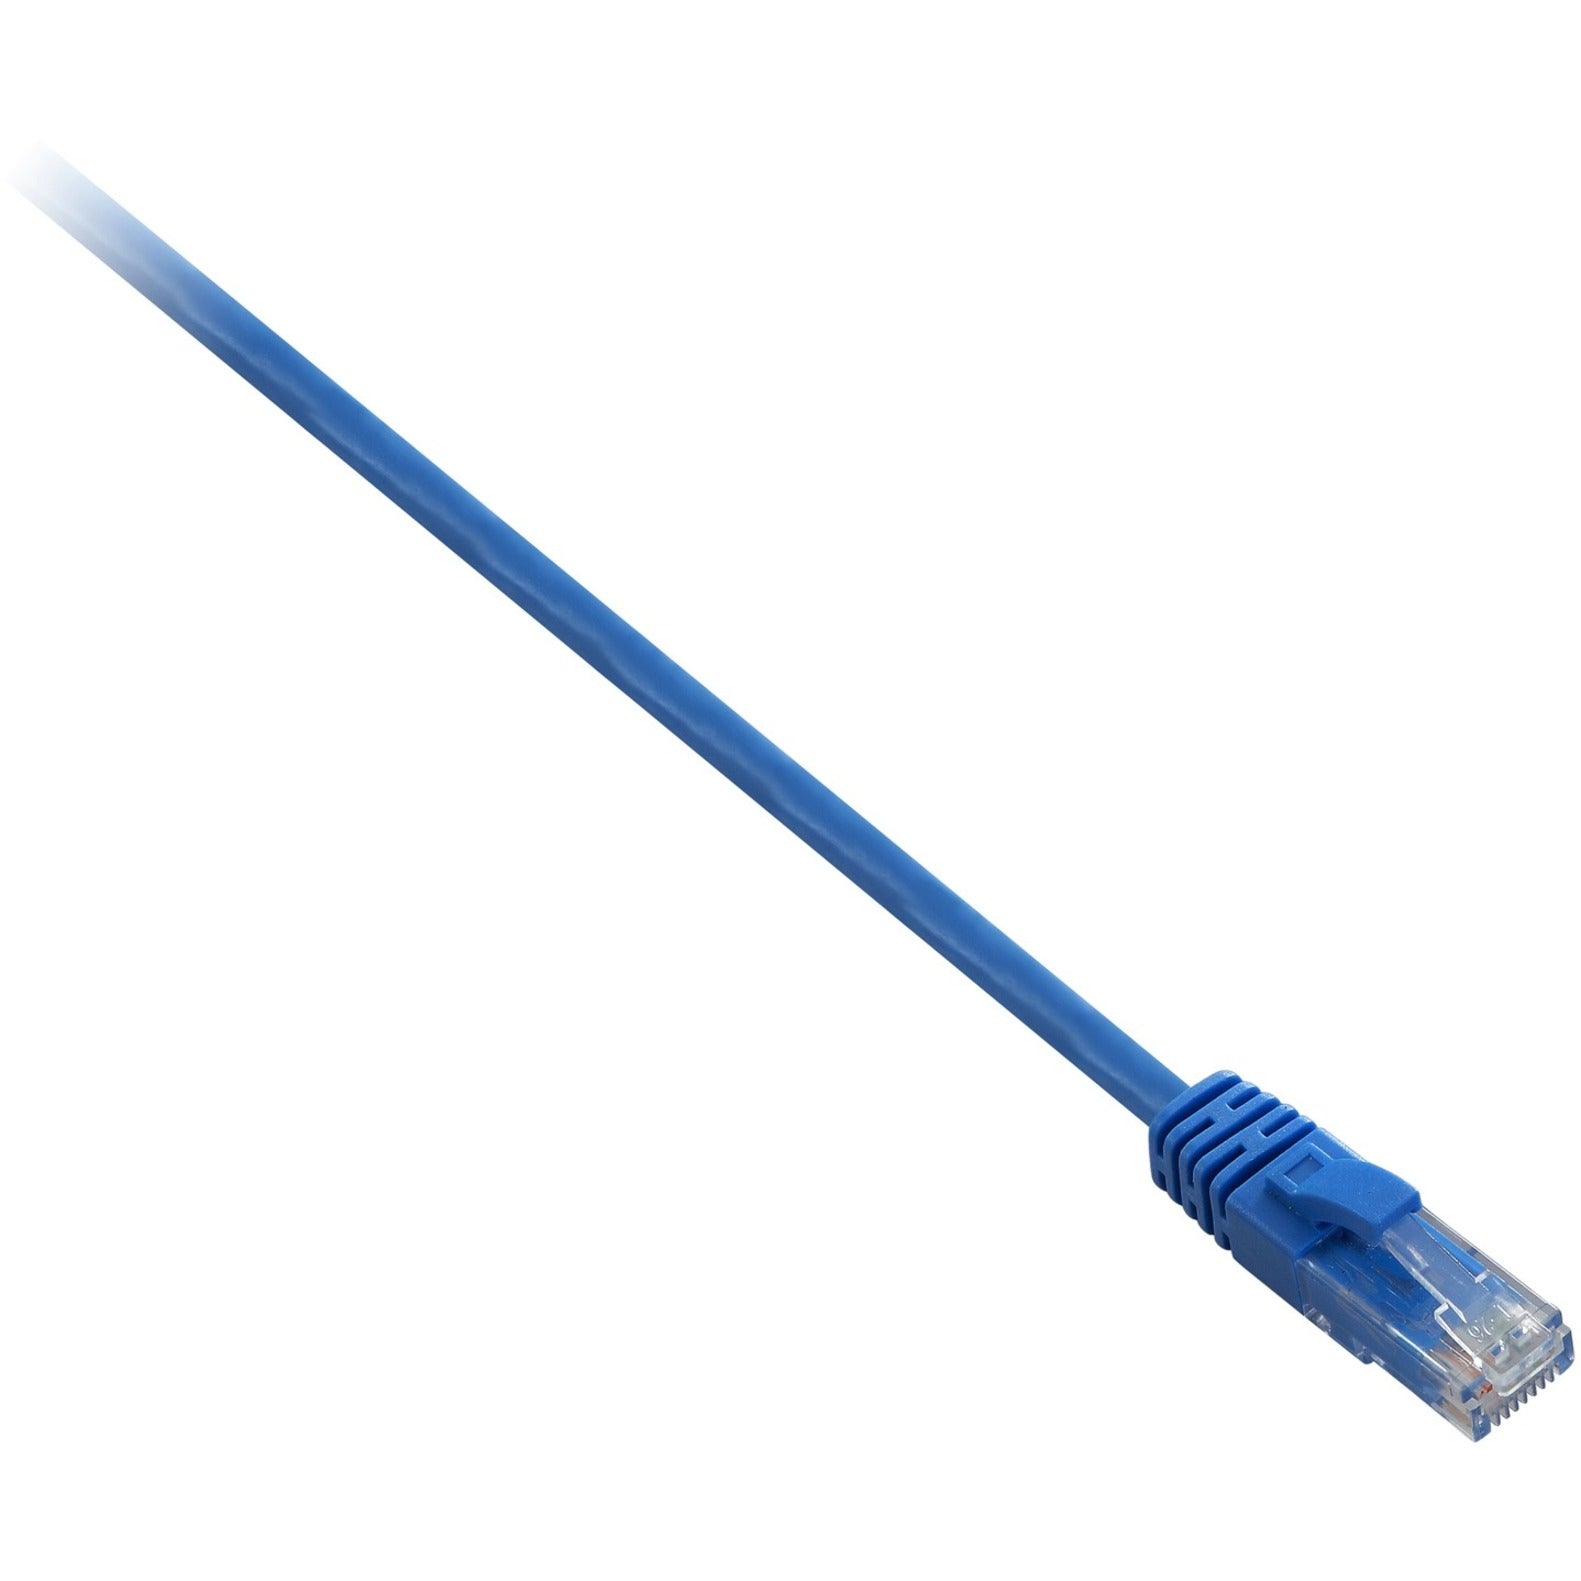 V7 V7N2C6-07F-BLUS Cable (Marca Azul) Cat6 sin blindaje (UTP) Macho RJ45 a Macho RJ45 2m 6.6ft Moldeado Protección de diafonía Reducción de ruido Alivio de tensión Sin enganches Pestillo de bloqueo Protección EMI/RF